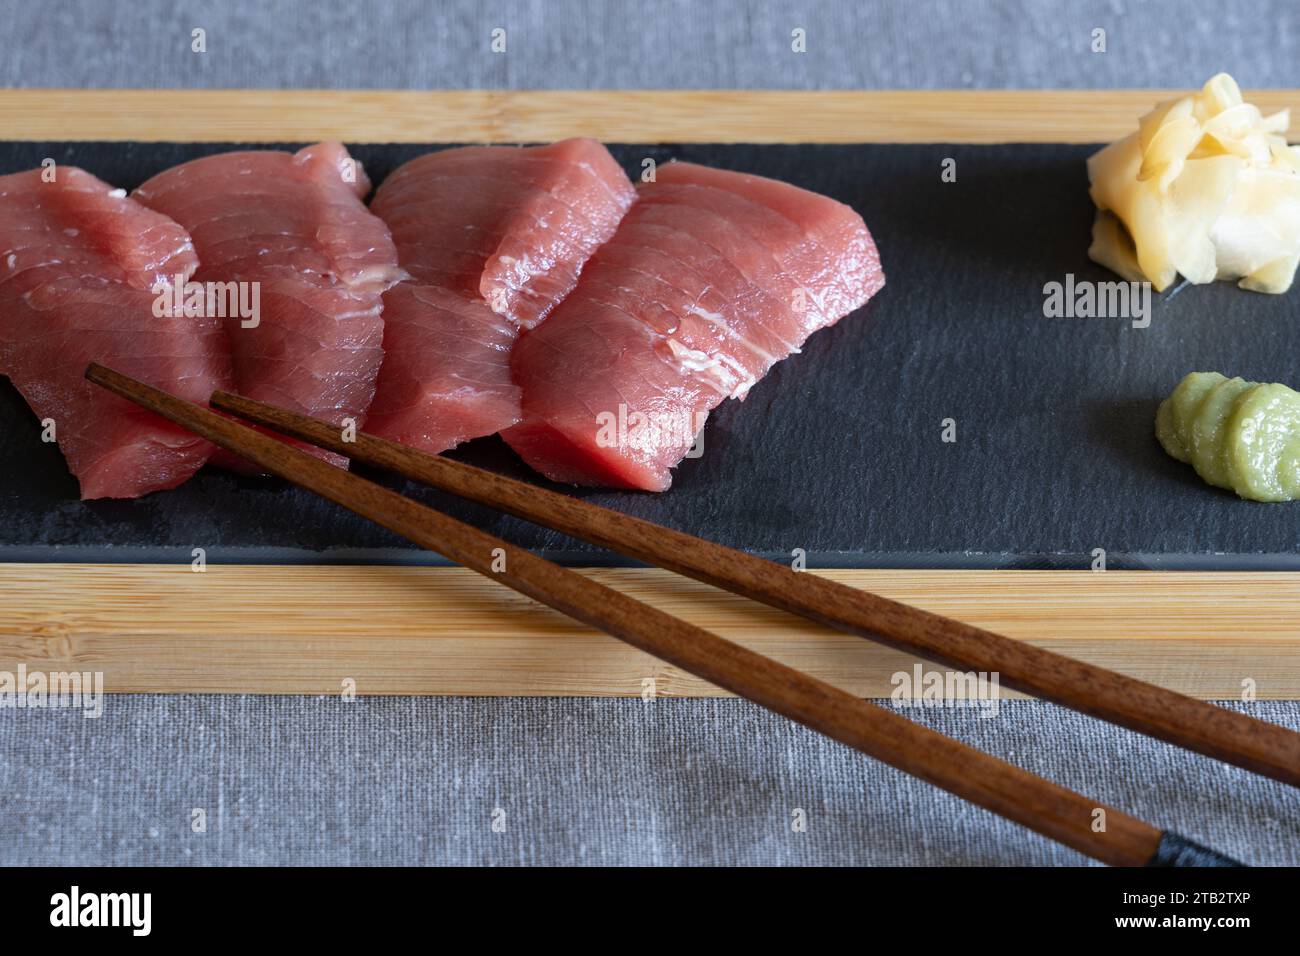 Japanisches Hausessen - hausgemachte rohe Akami-Thunfisch-Sashimi auf einem Schieferbrett mit Holzstäbchen, Ingwer und Wasabi. UK Stockfoto